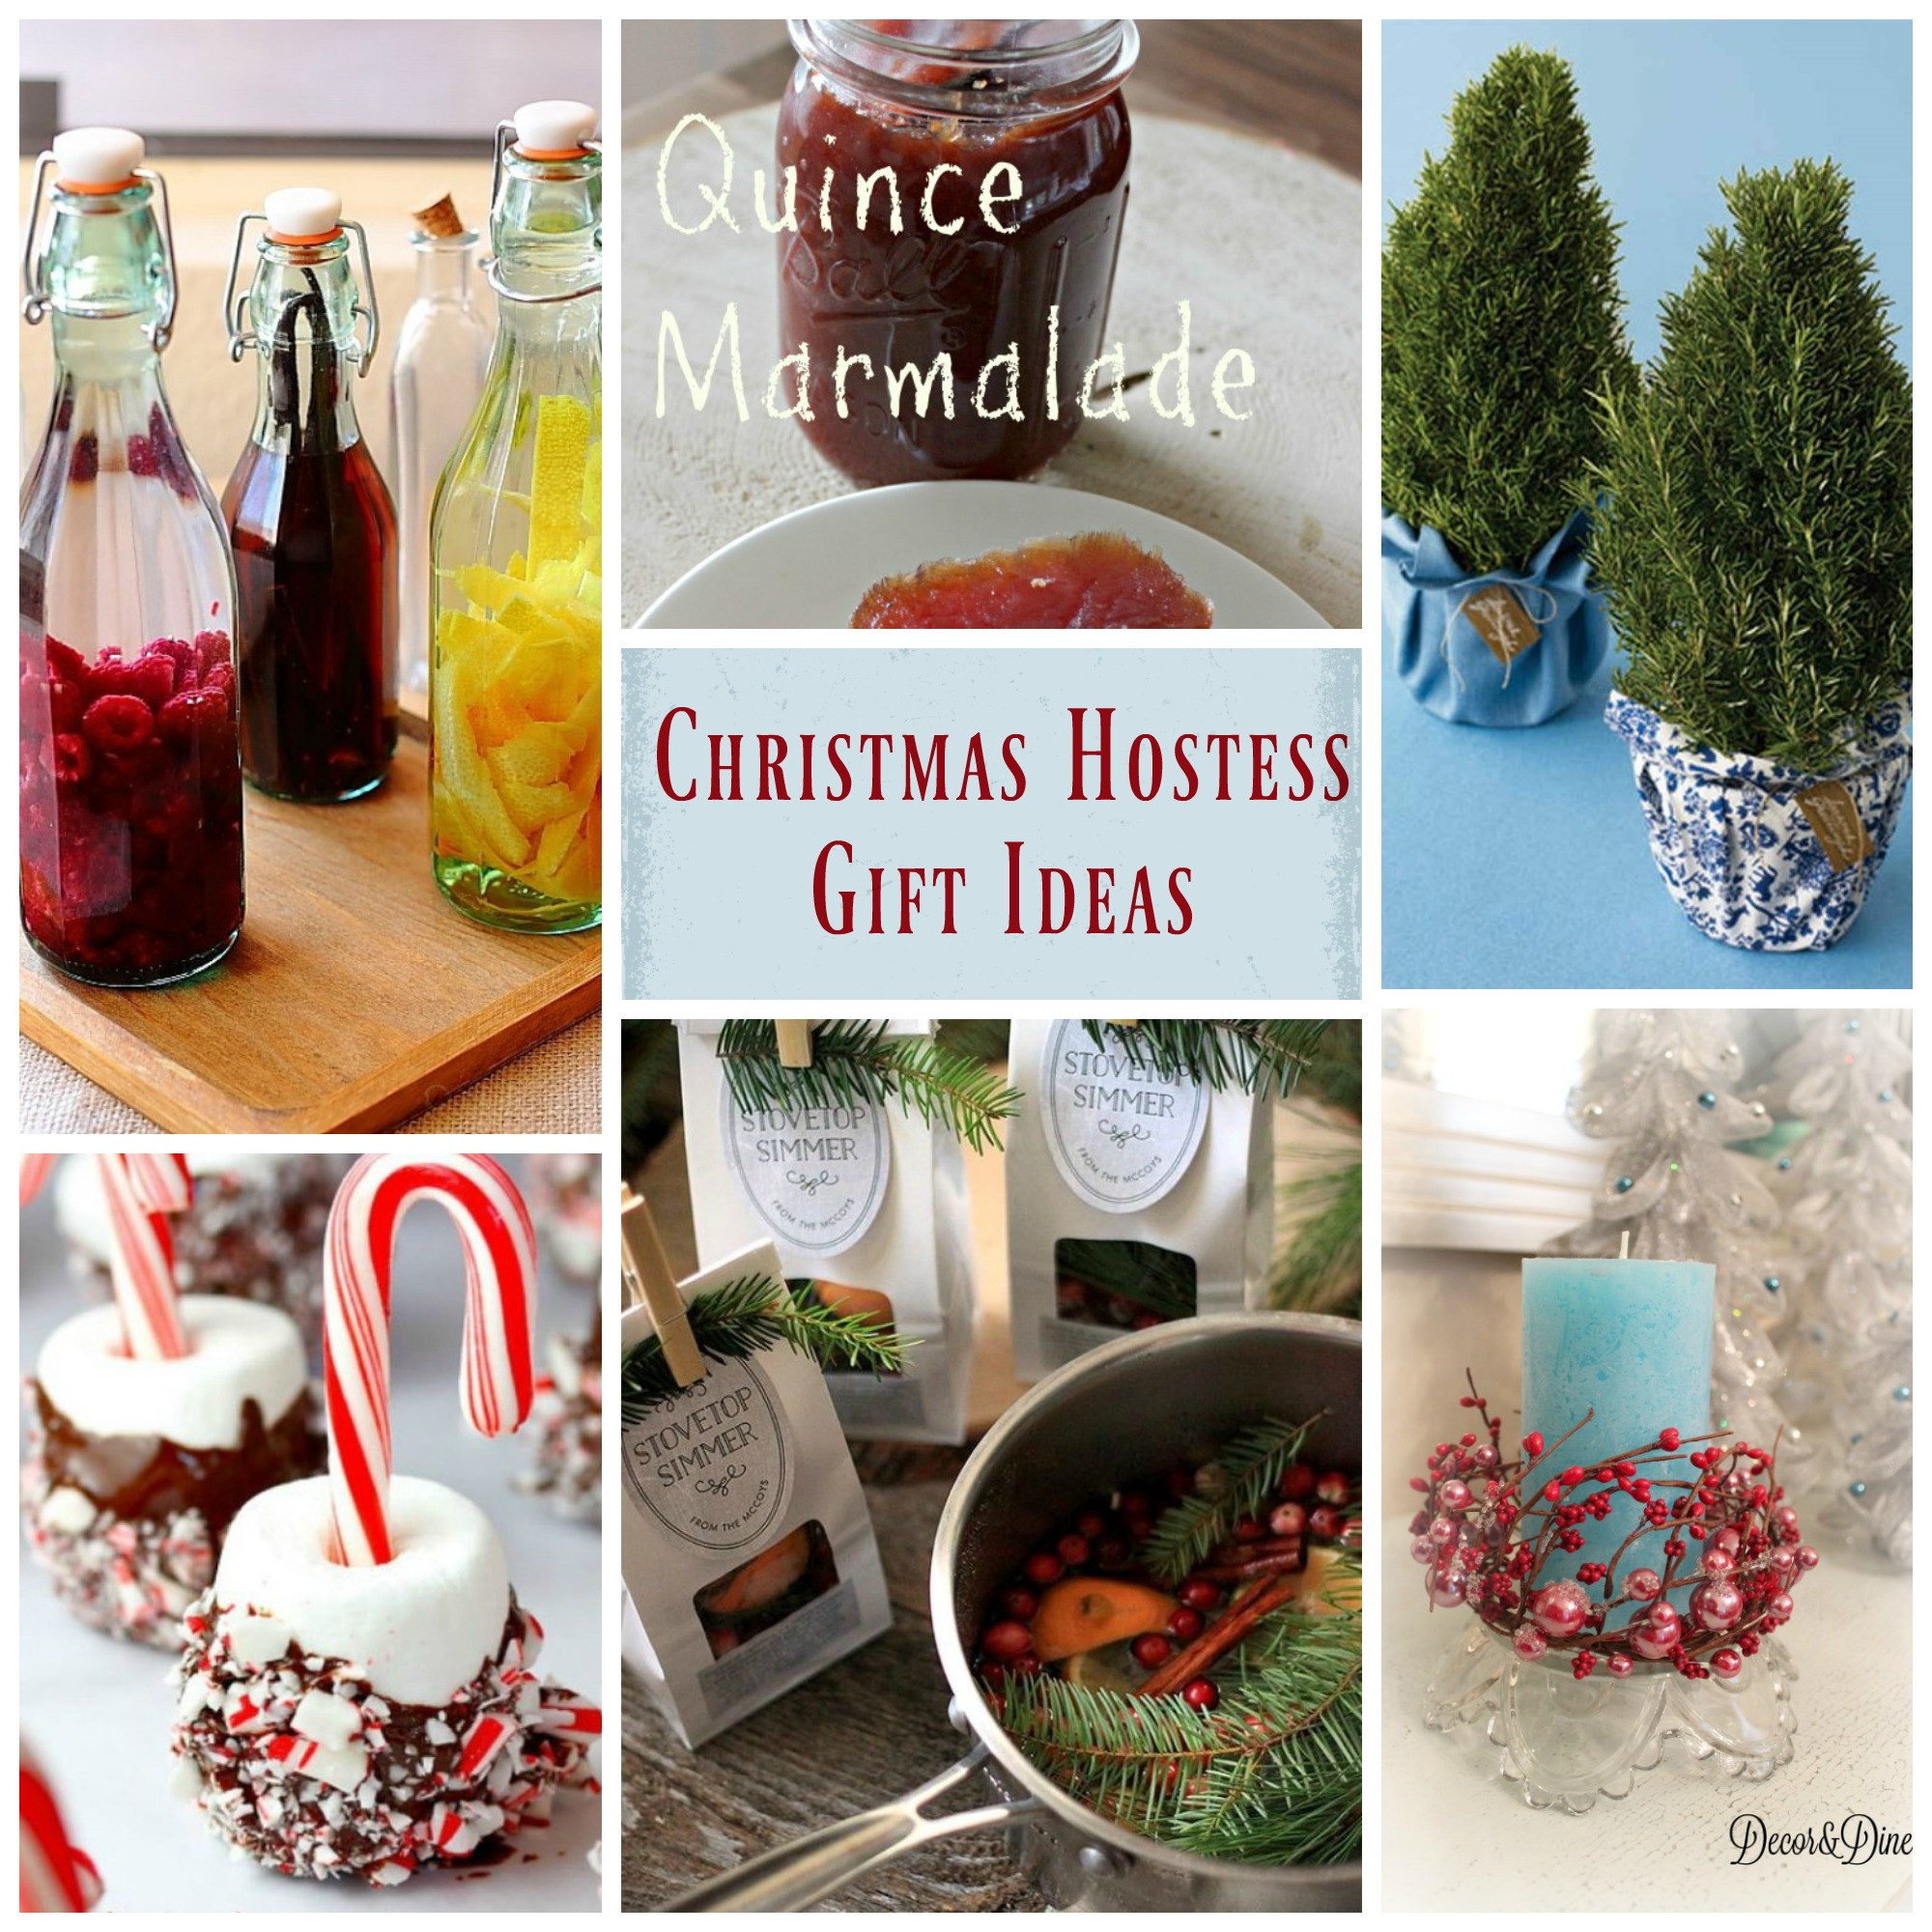 Holiday Party Hostess Gift Ideas
 Christmas Hostess Gift Ideas